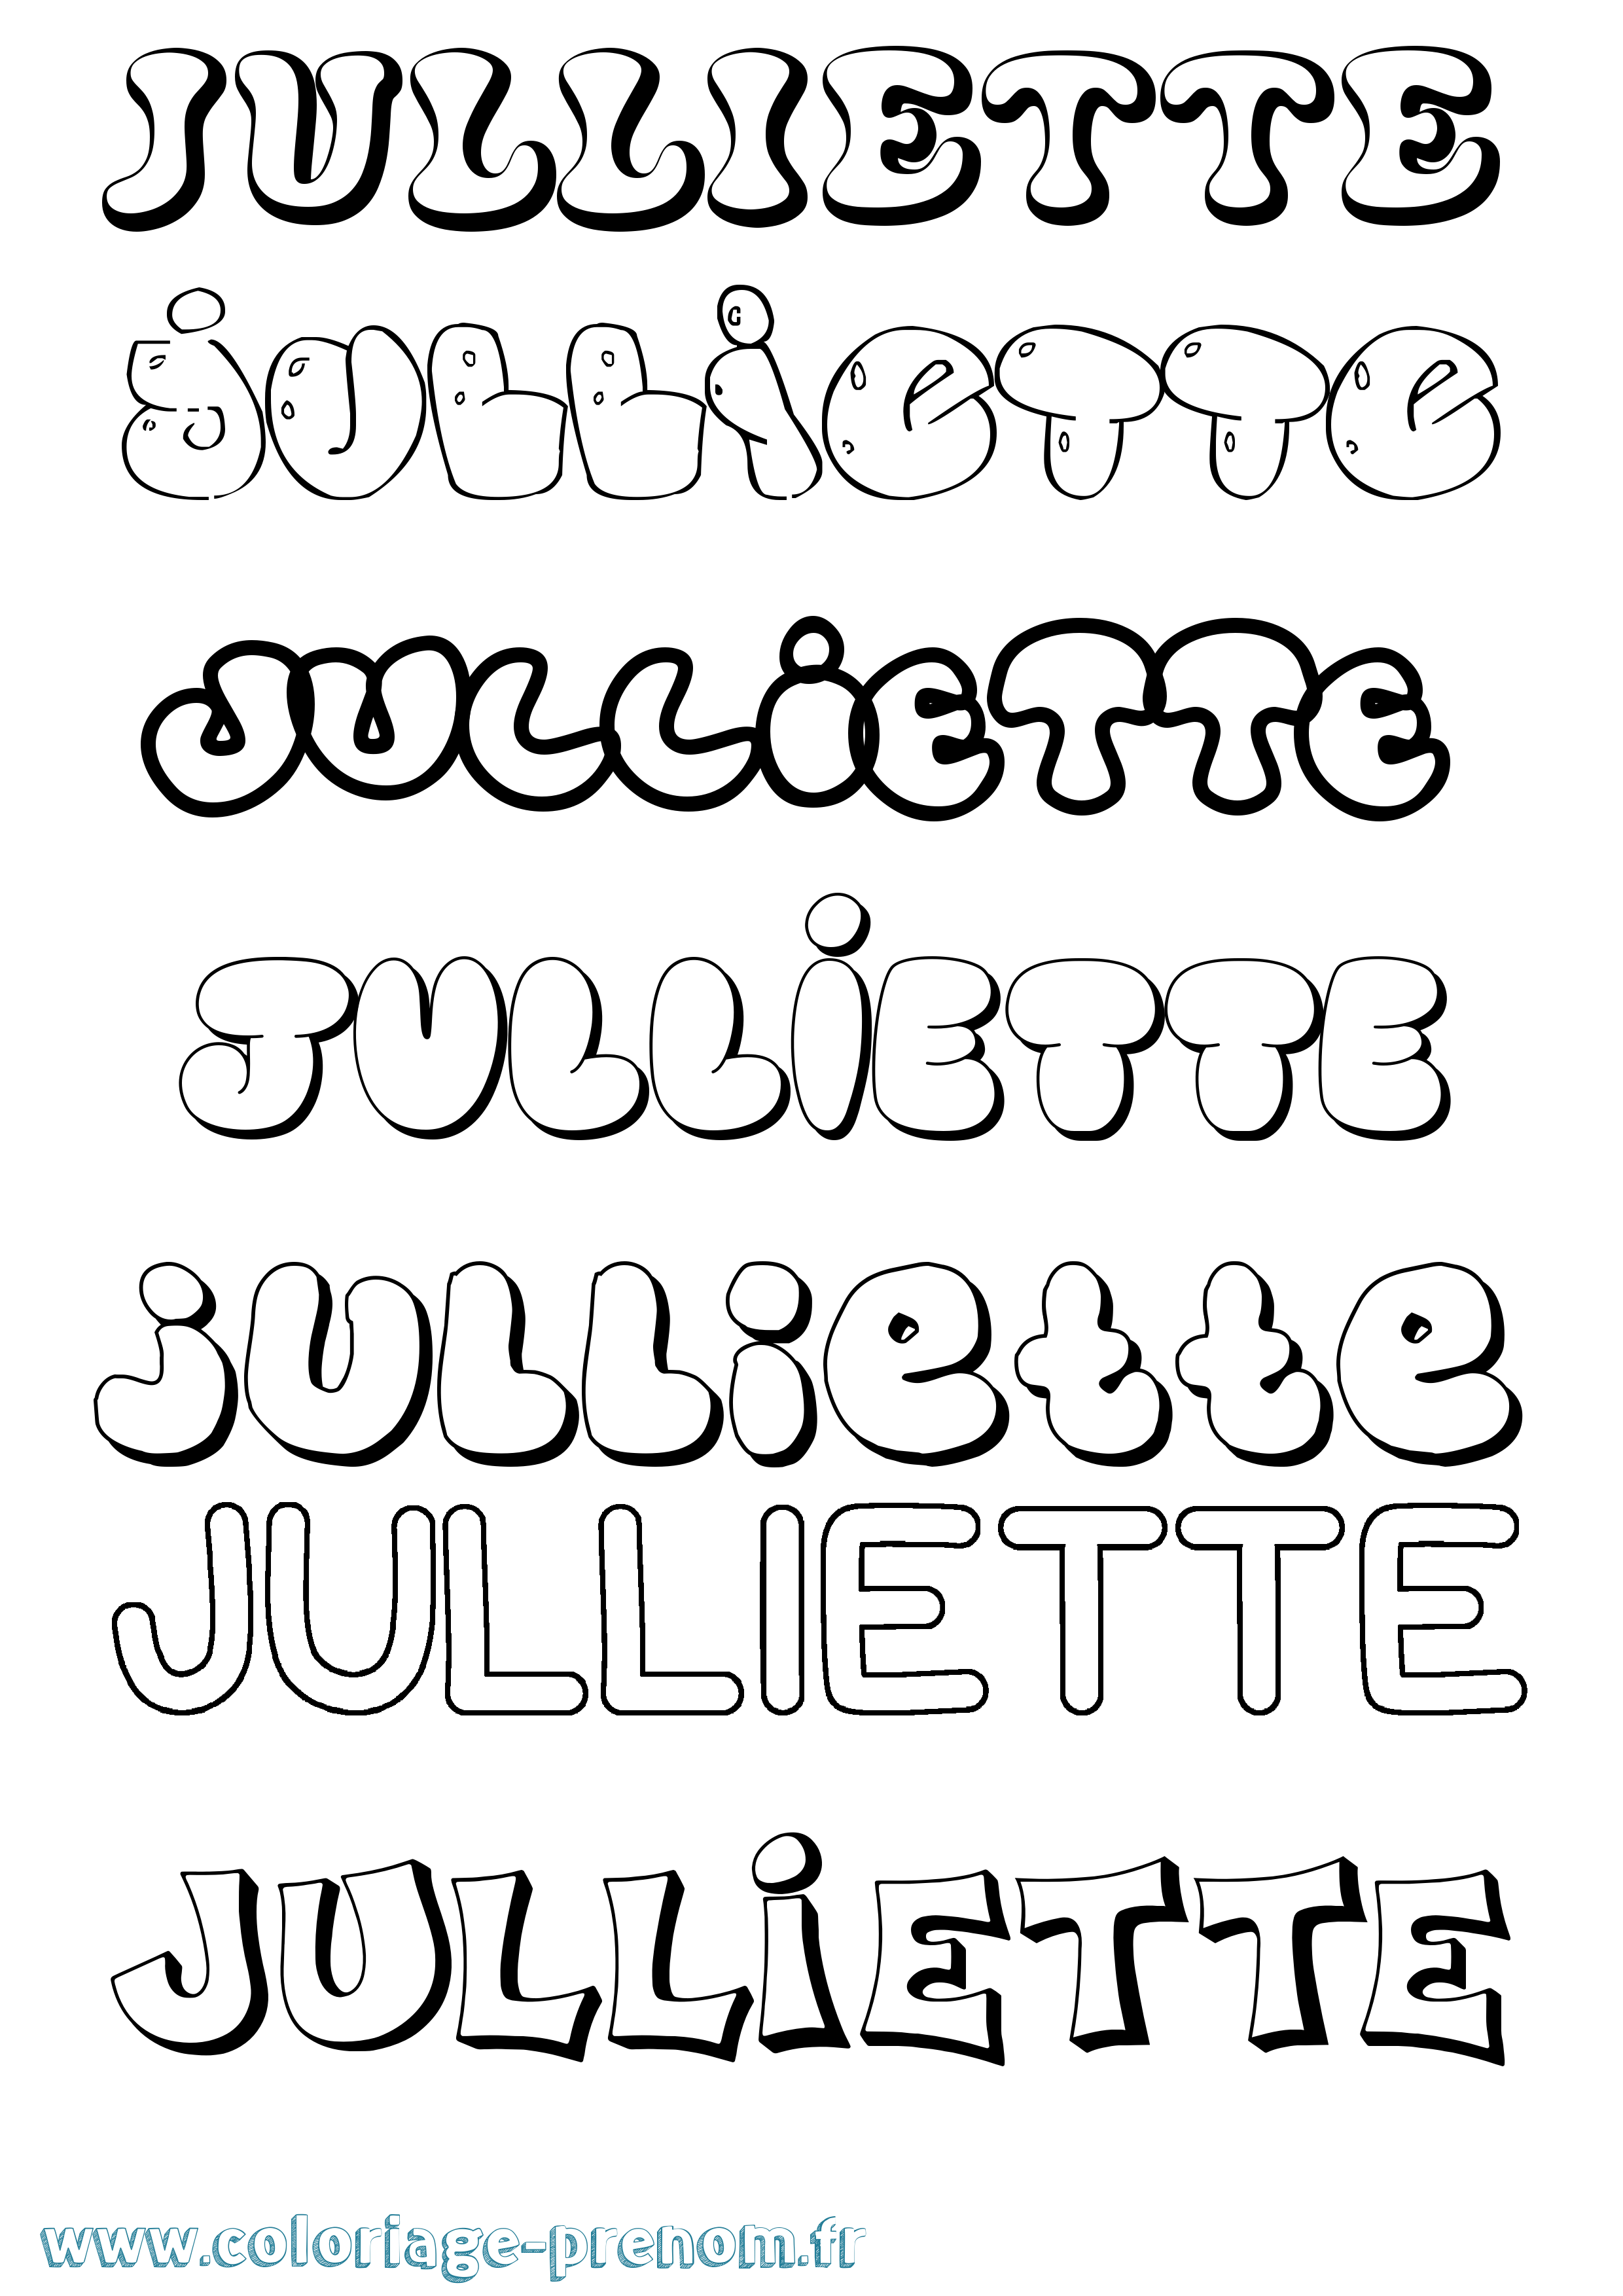 Coloriage prénom Julliette Bubble